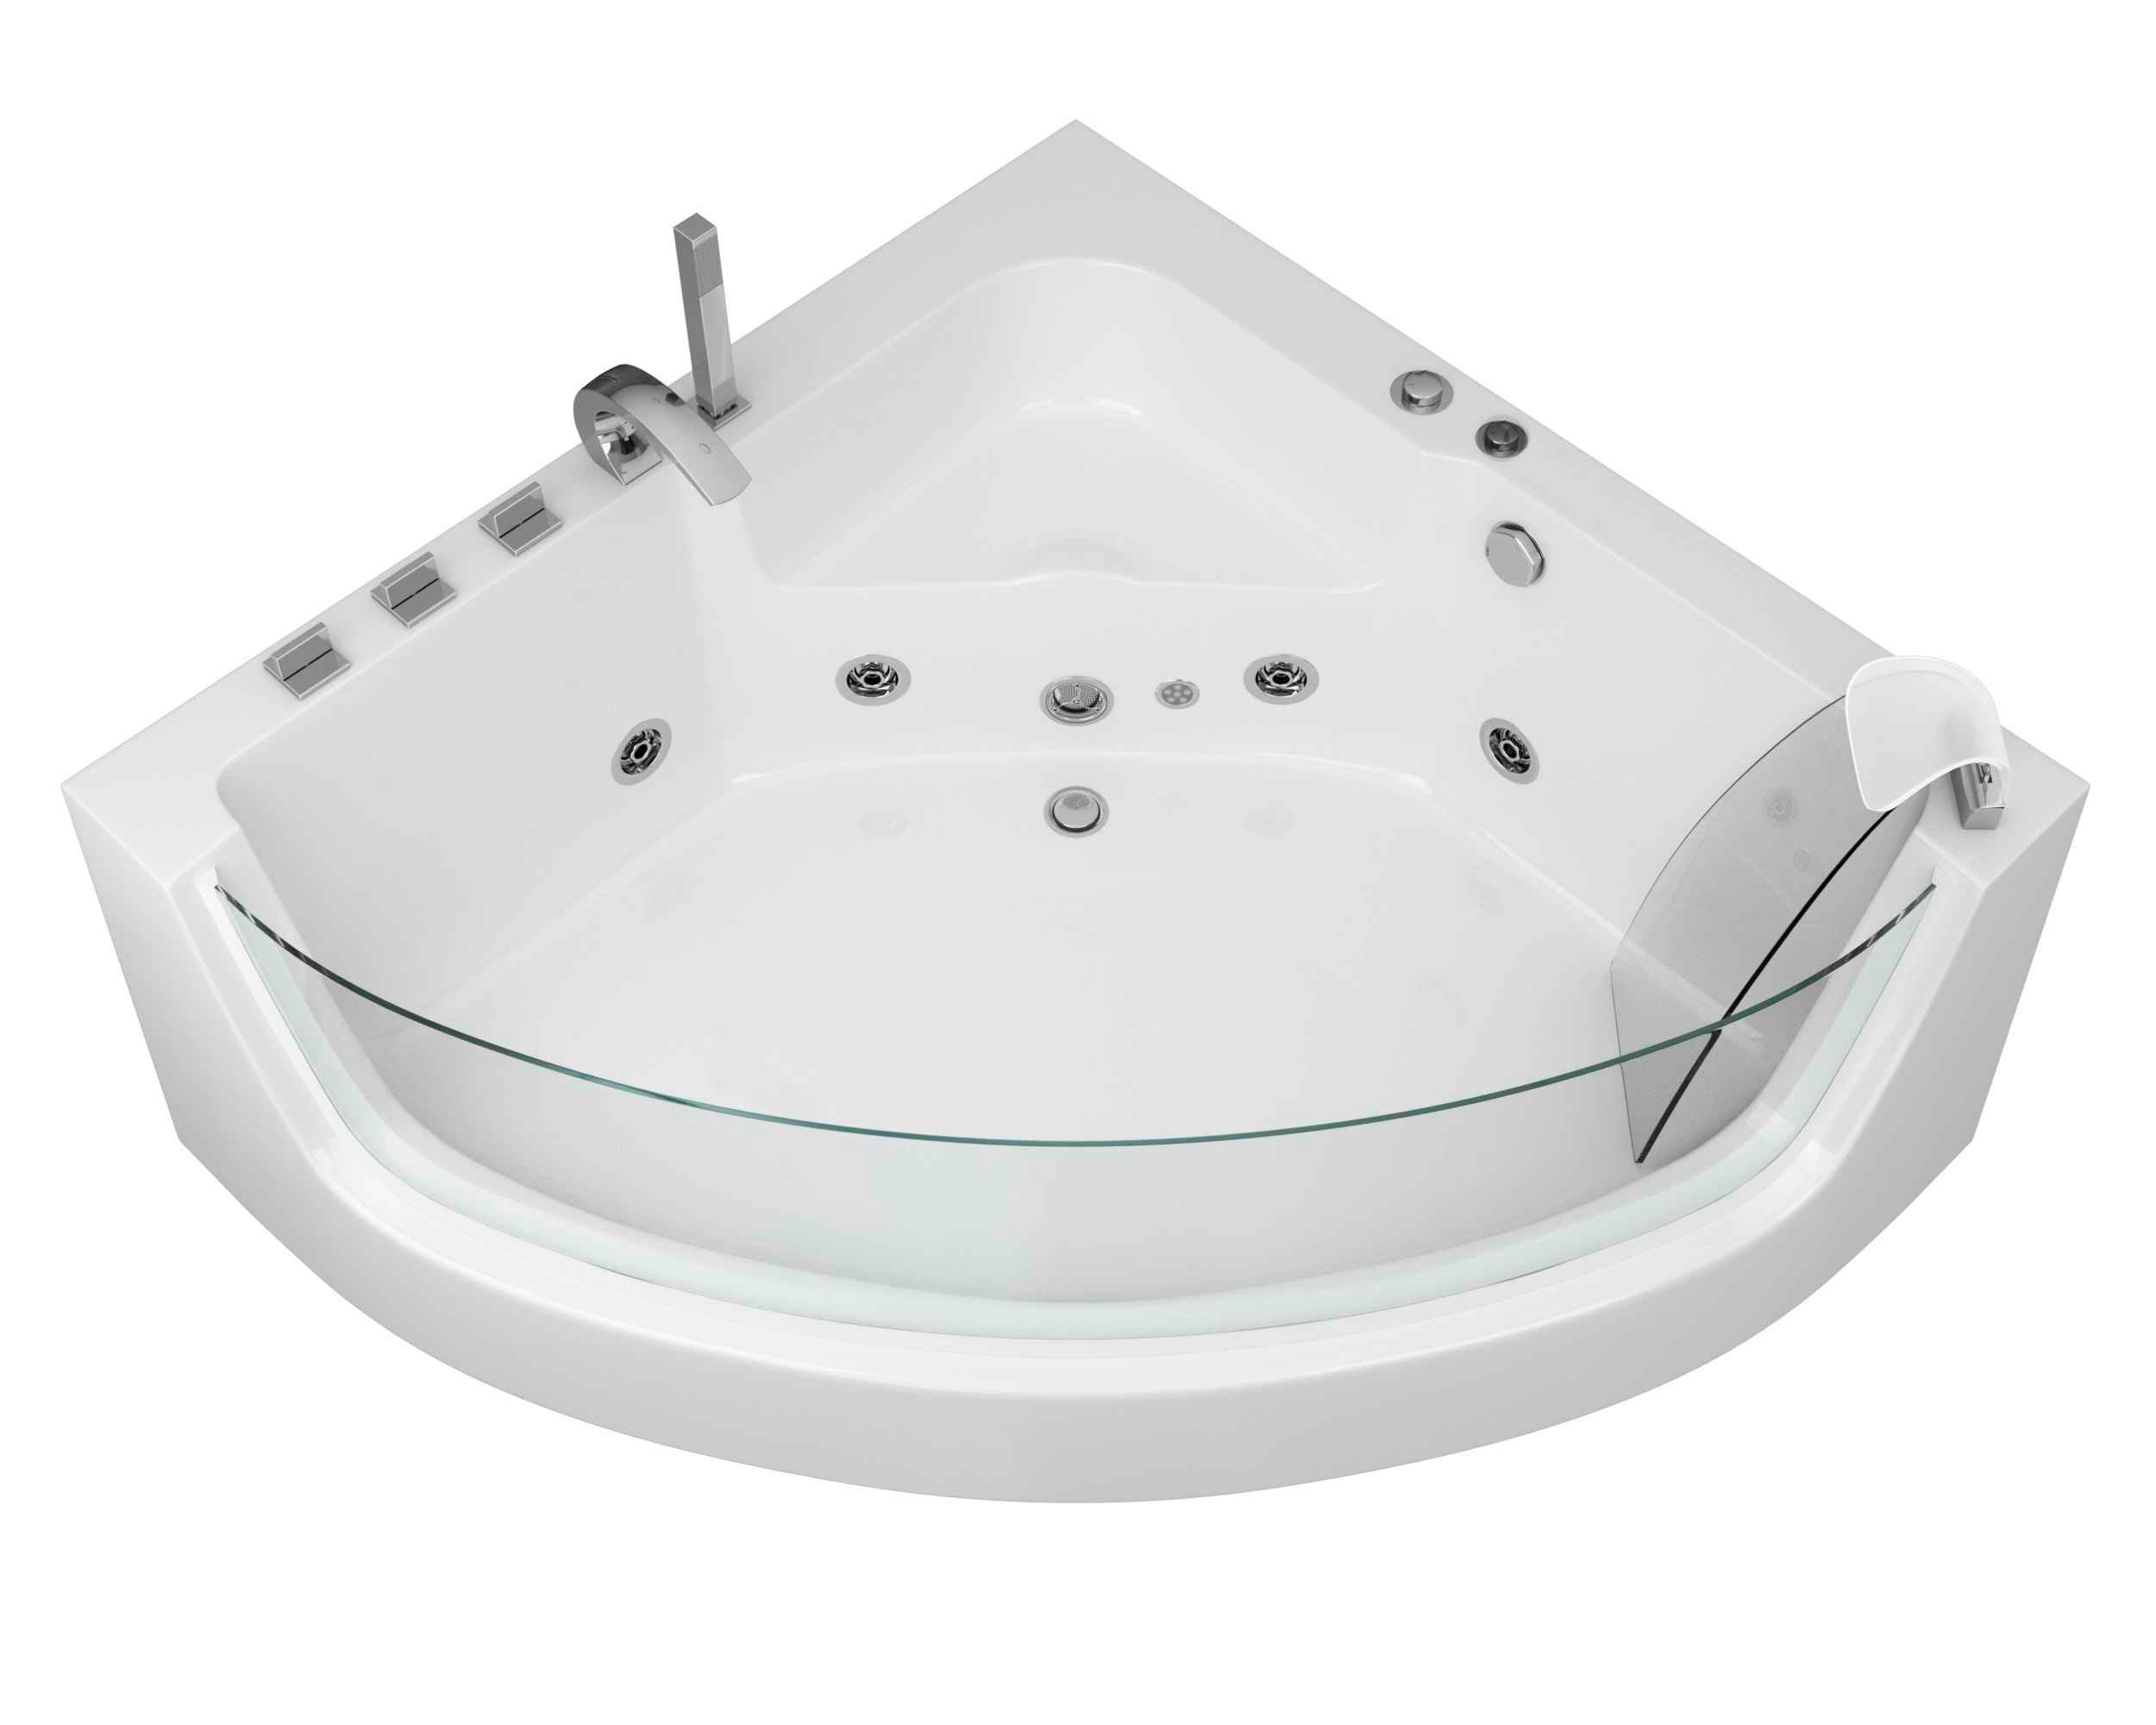 Гидромассажная ванна Grossman 150x150 GR-15000-1 с гидромассажем, размер 150х150, цвет белый - фото 1